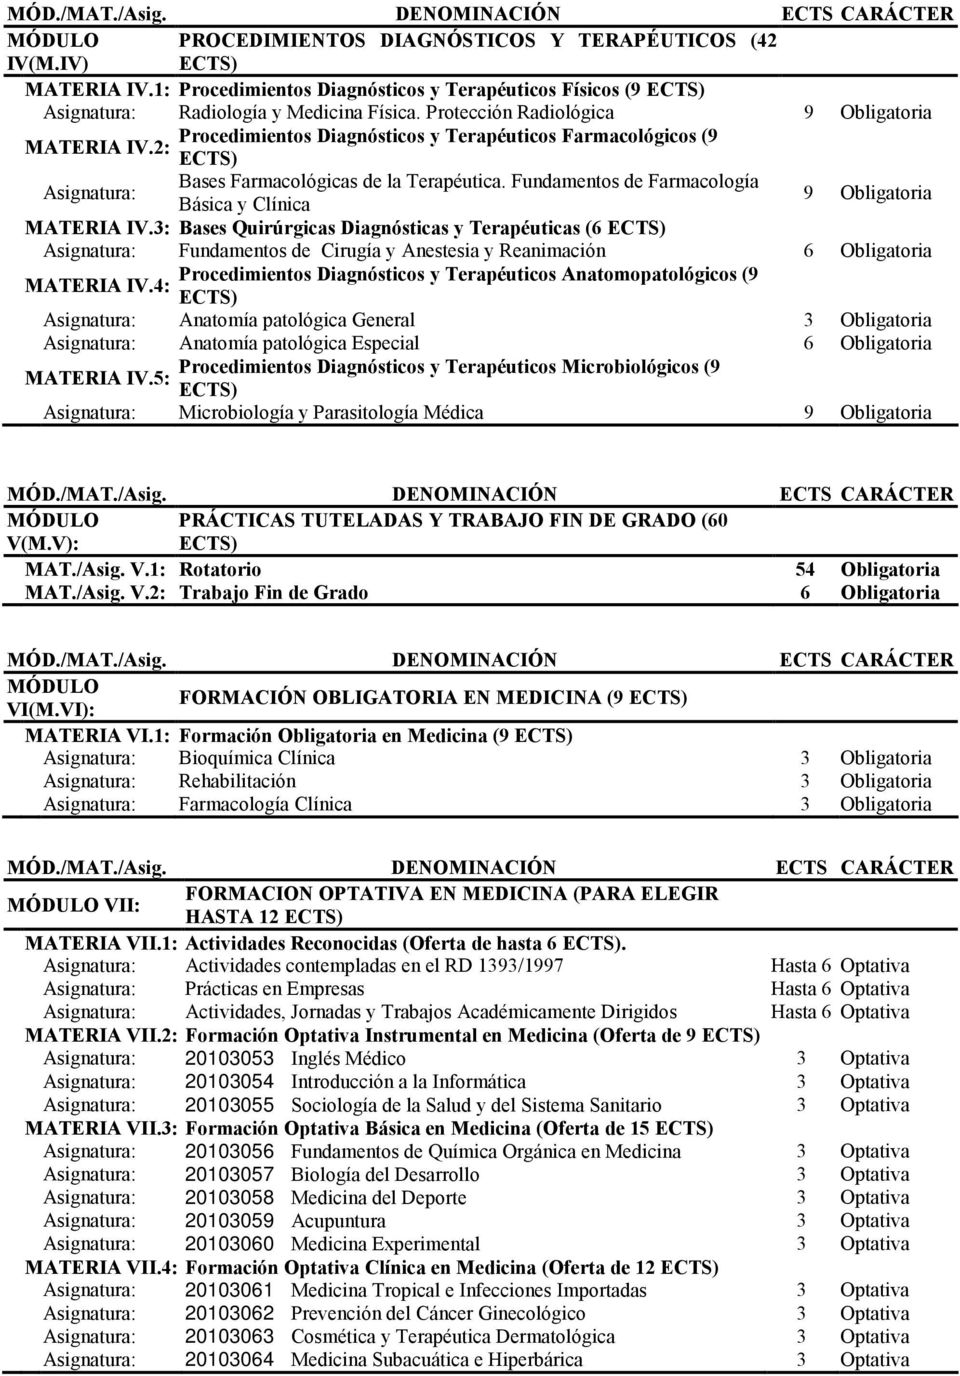 Fundamentos de Farmacología Básica y Clínica 9 Obligatoria MATERIA IV.